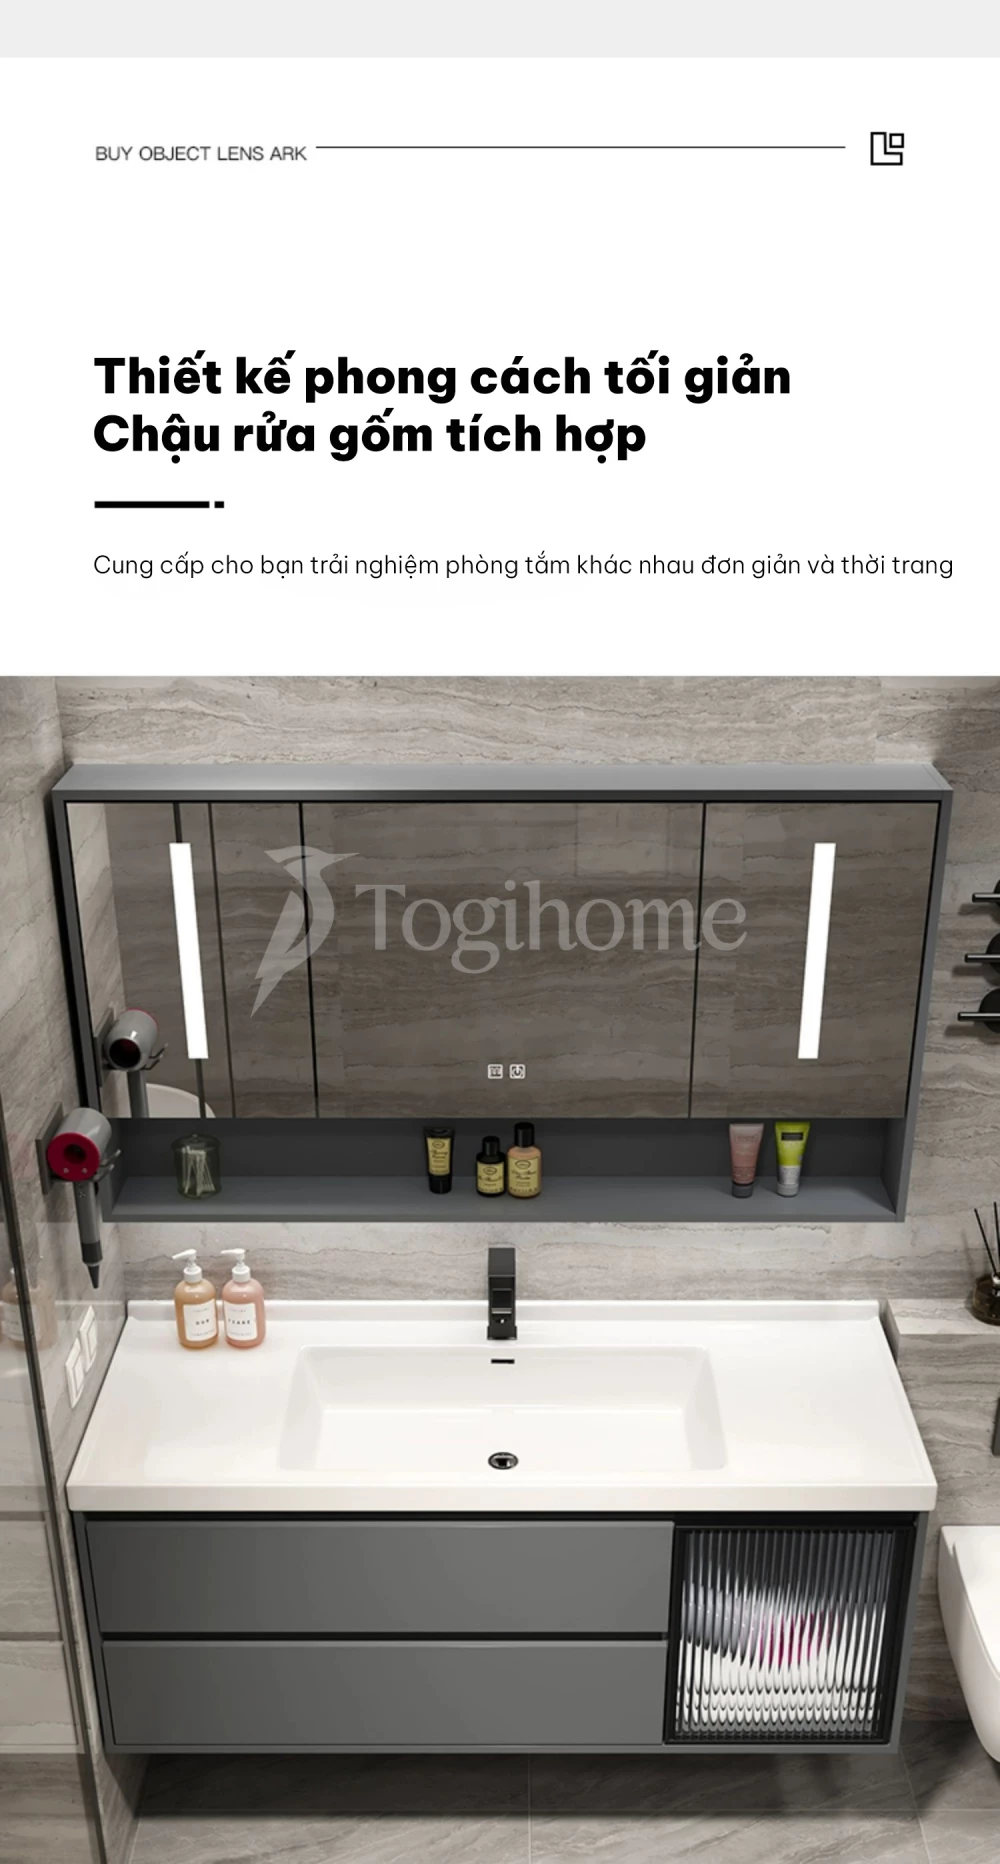 Bộ tủ chậu phòng tắm cao cấp TG26 với thiết kế hiện đại tích hợp chậu rửa gốm